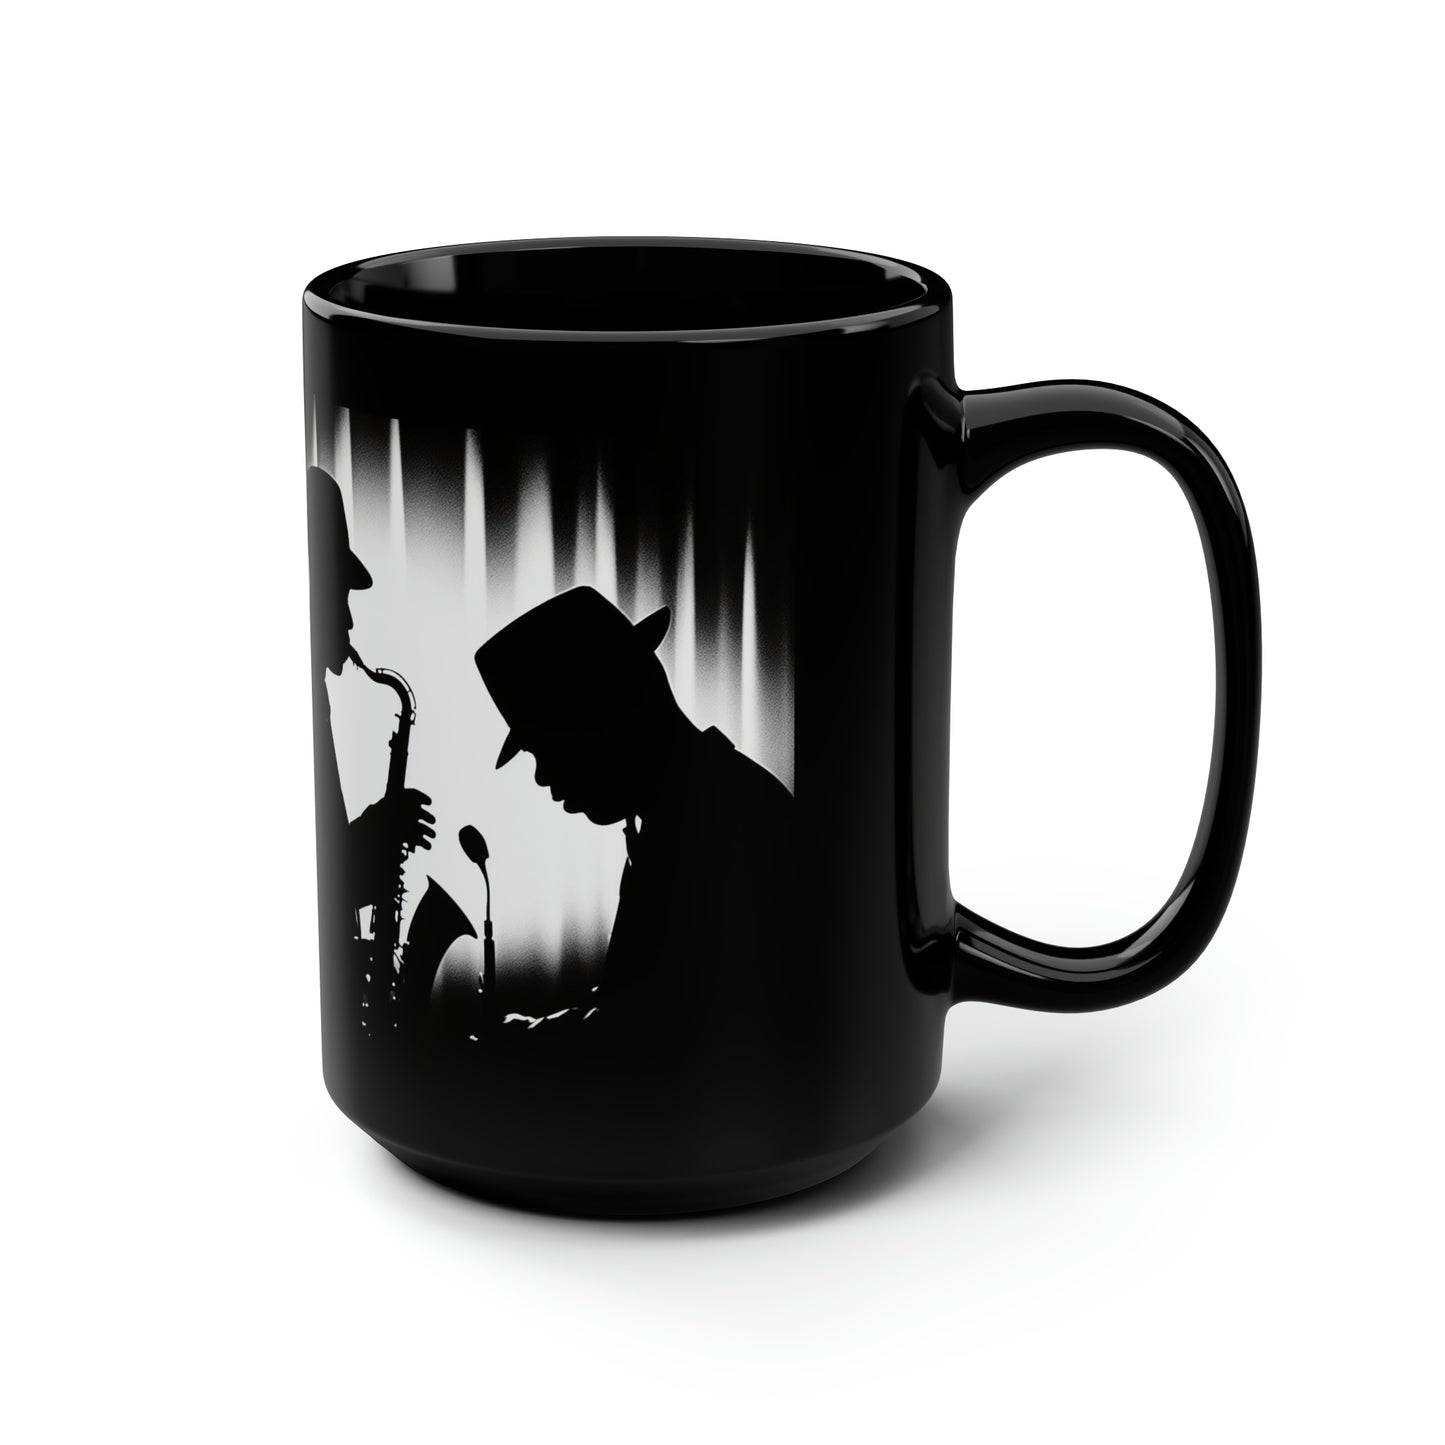 Smoov Jazz 15oz Black Coffee Mug